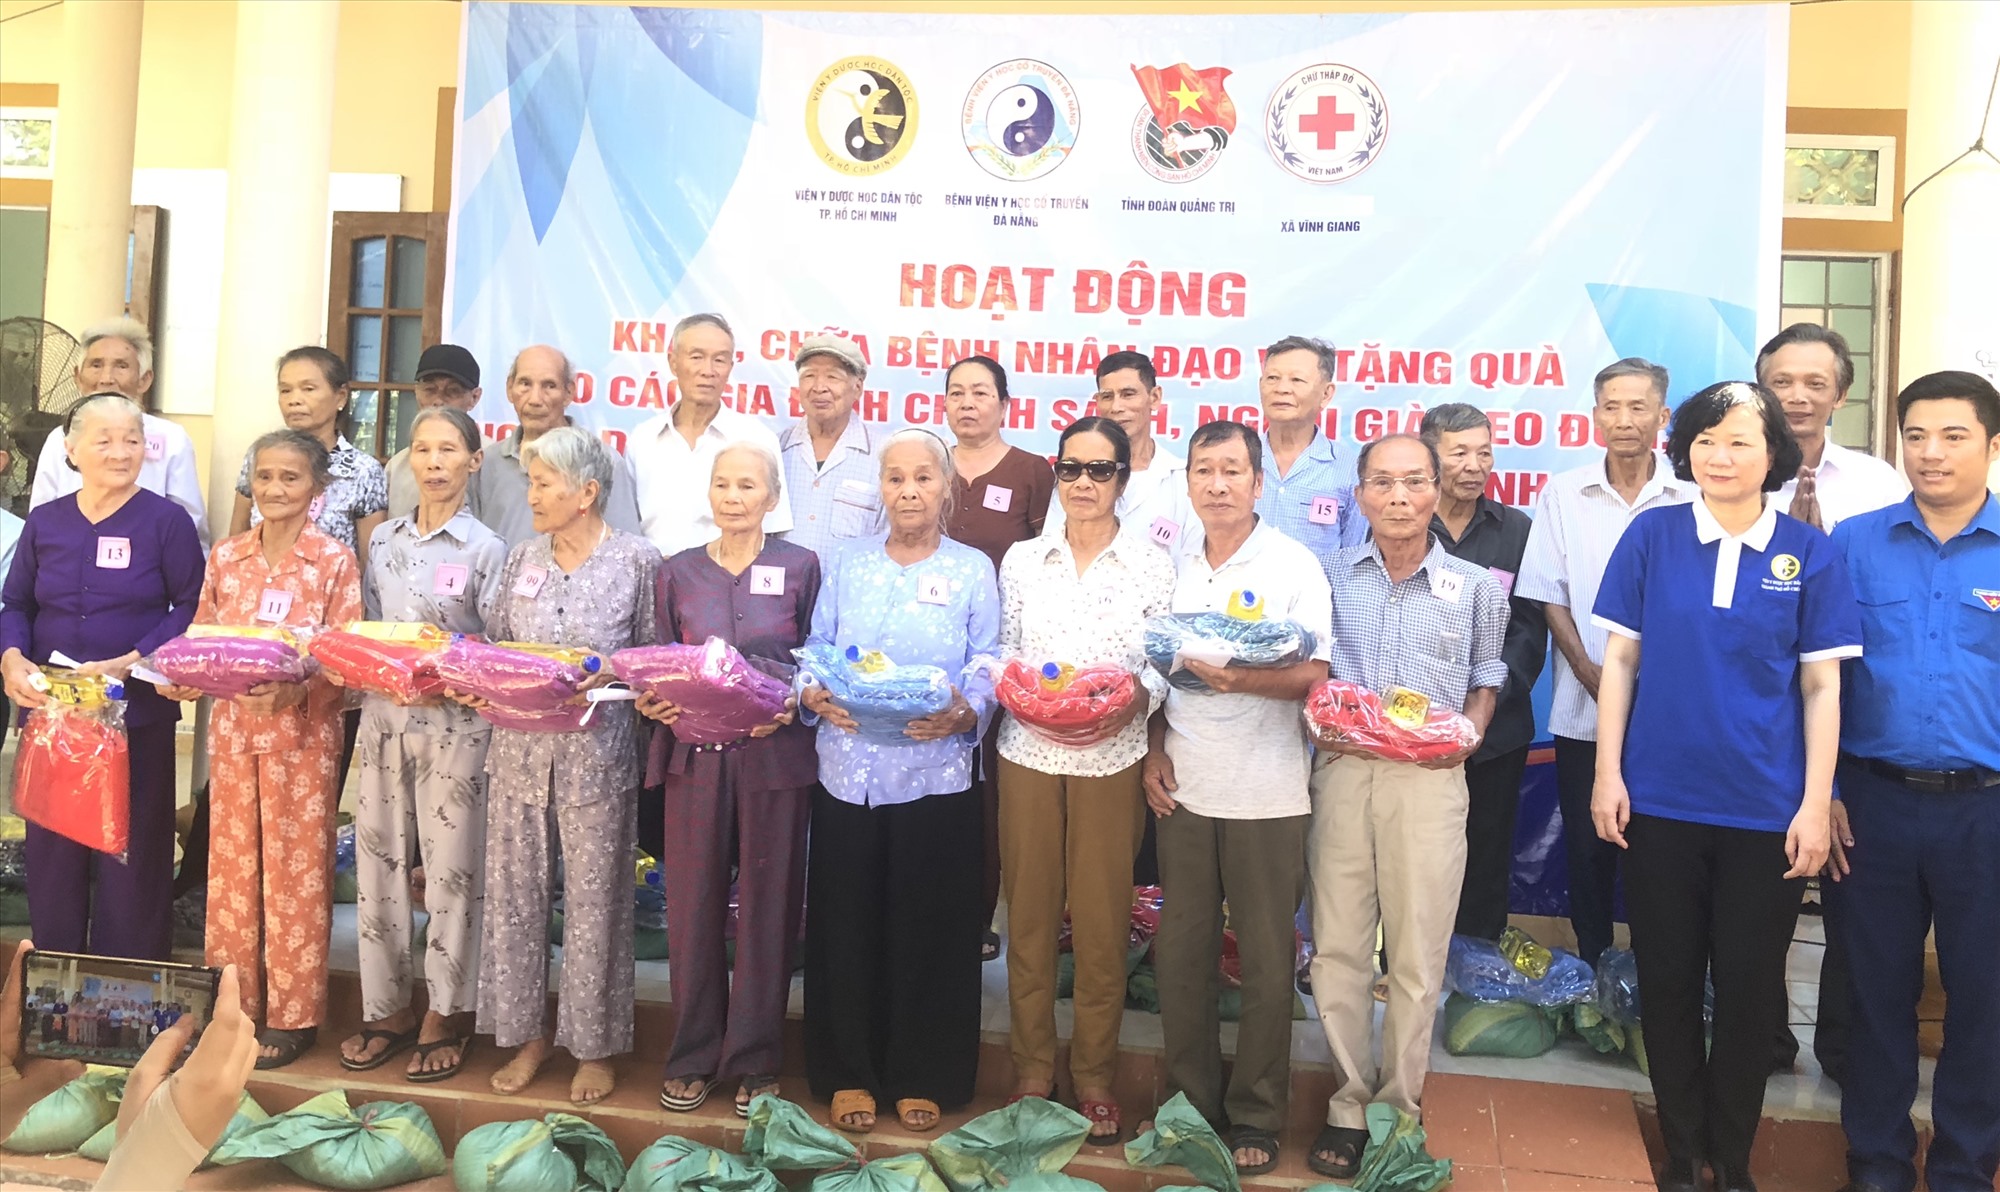 Viện Y dược học dân tộc Thành phố Hồ Chí Minh cùng các đơn vị phối hợp trao hỗ trợ cho các gia đình có hoàn cảnh khó khăn - Ảnh: NT